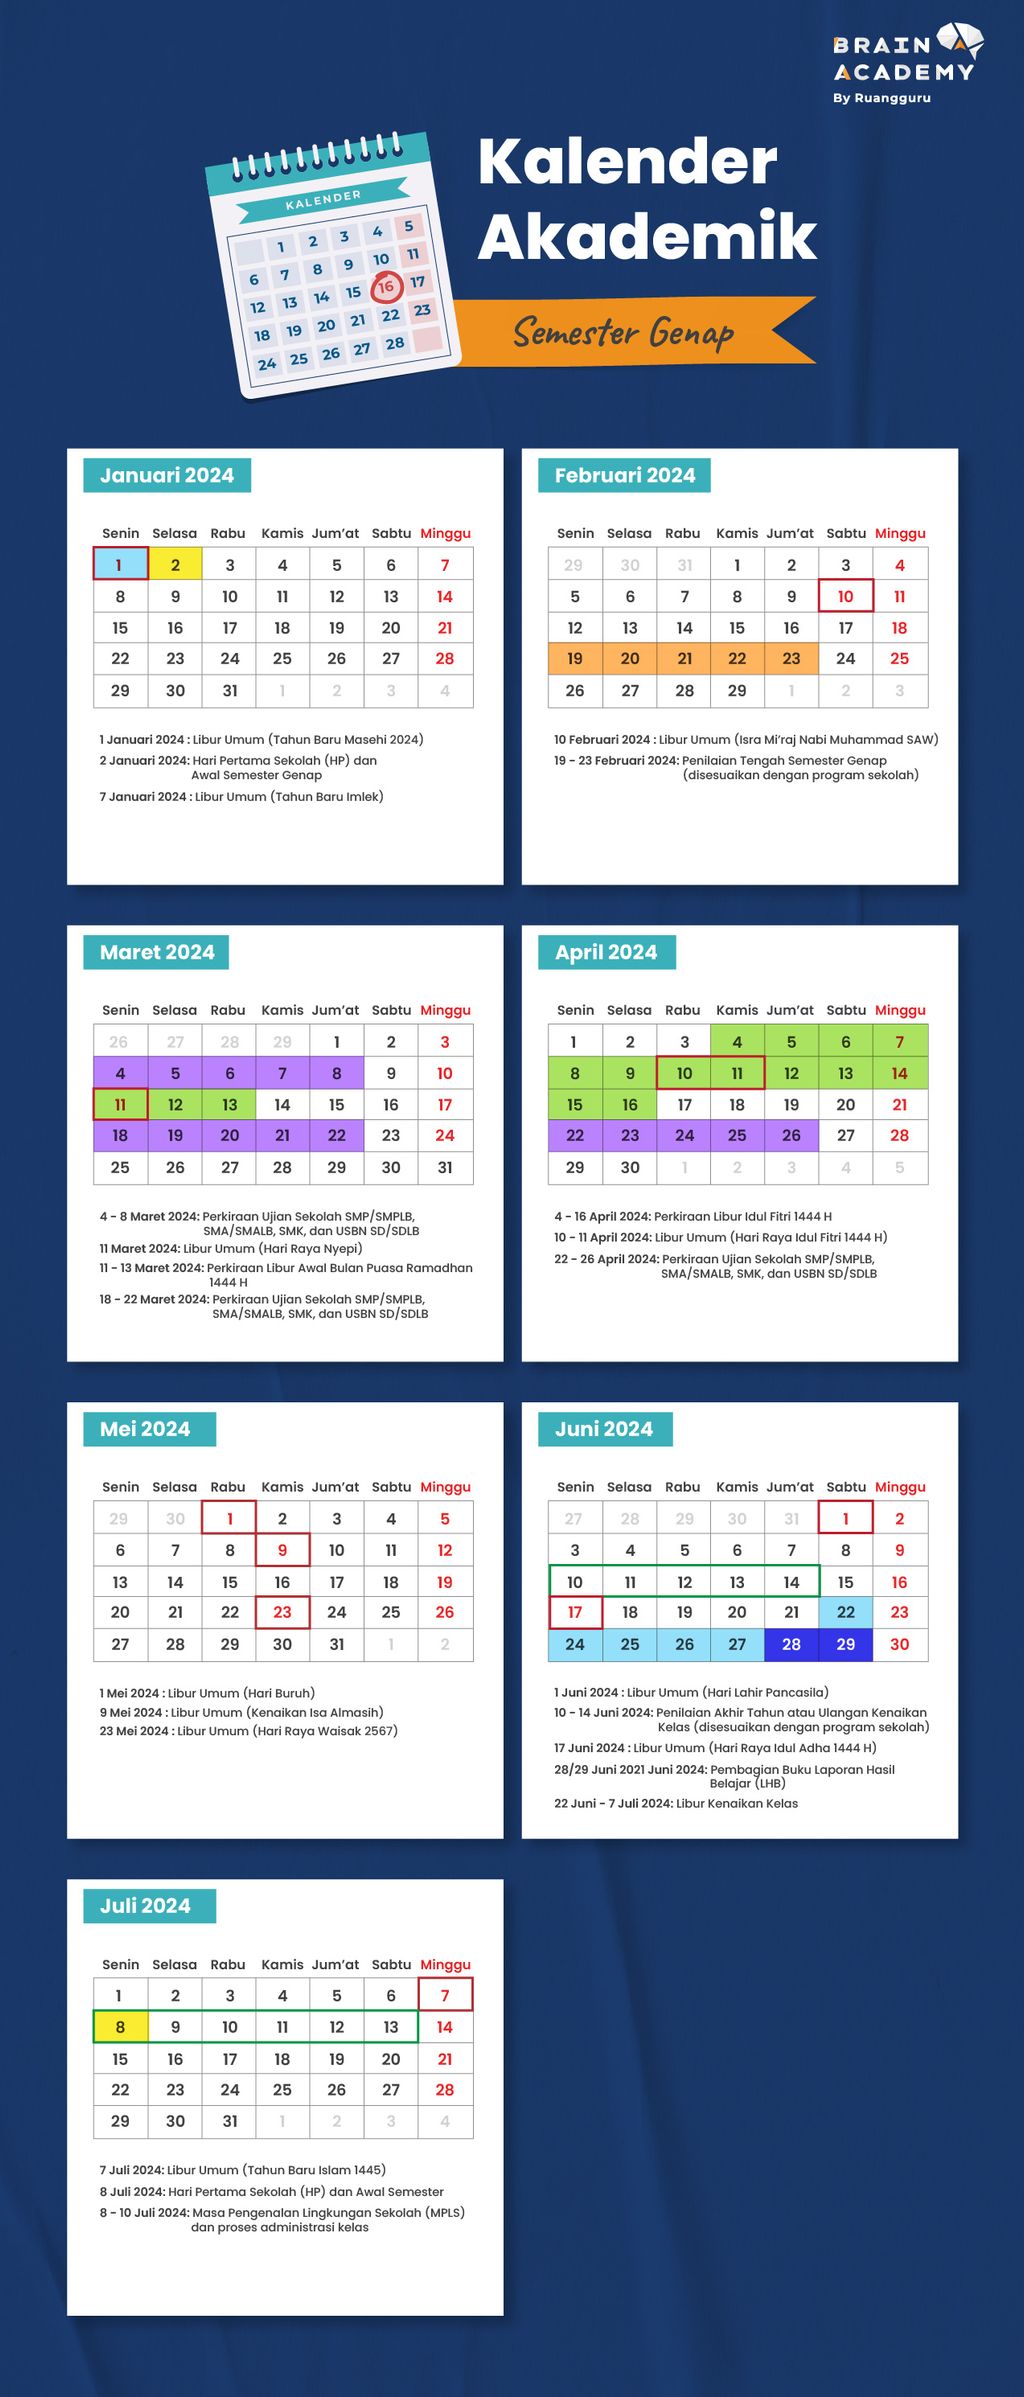 Kalender pendidikan 2023/2024 semester genap